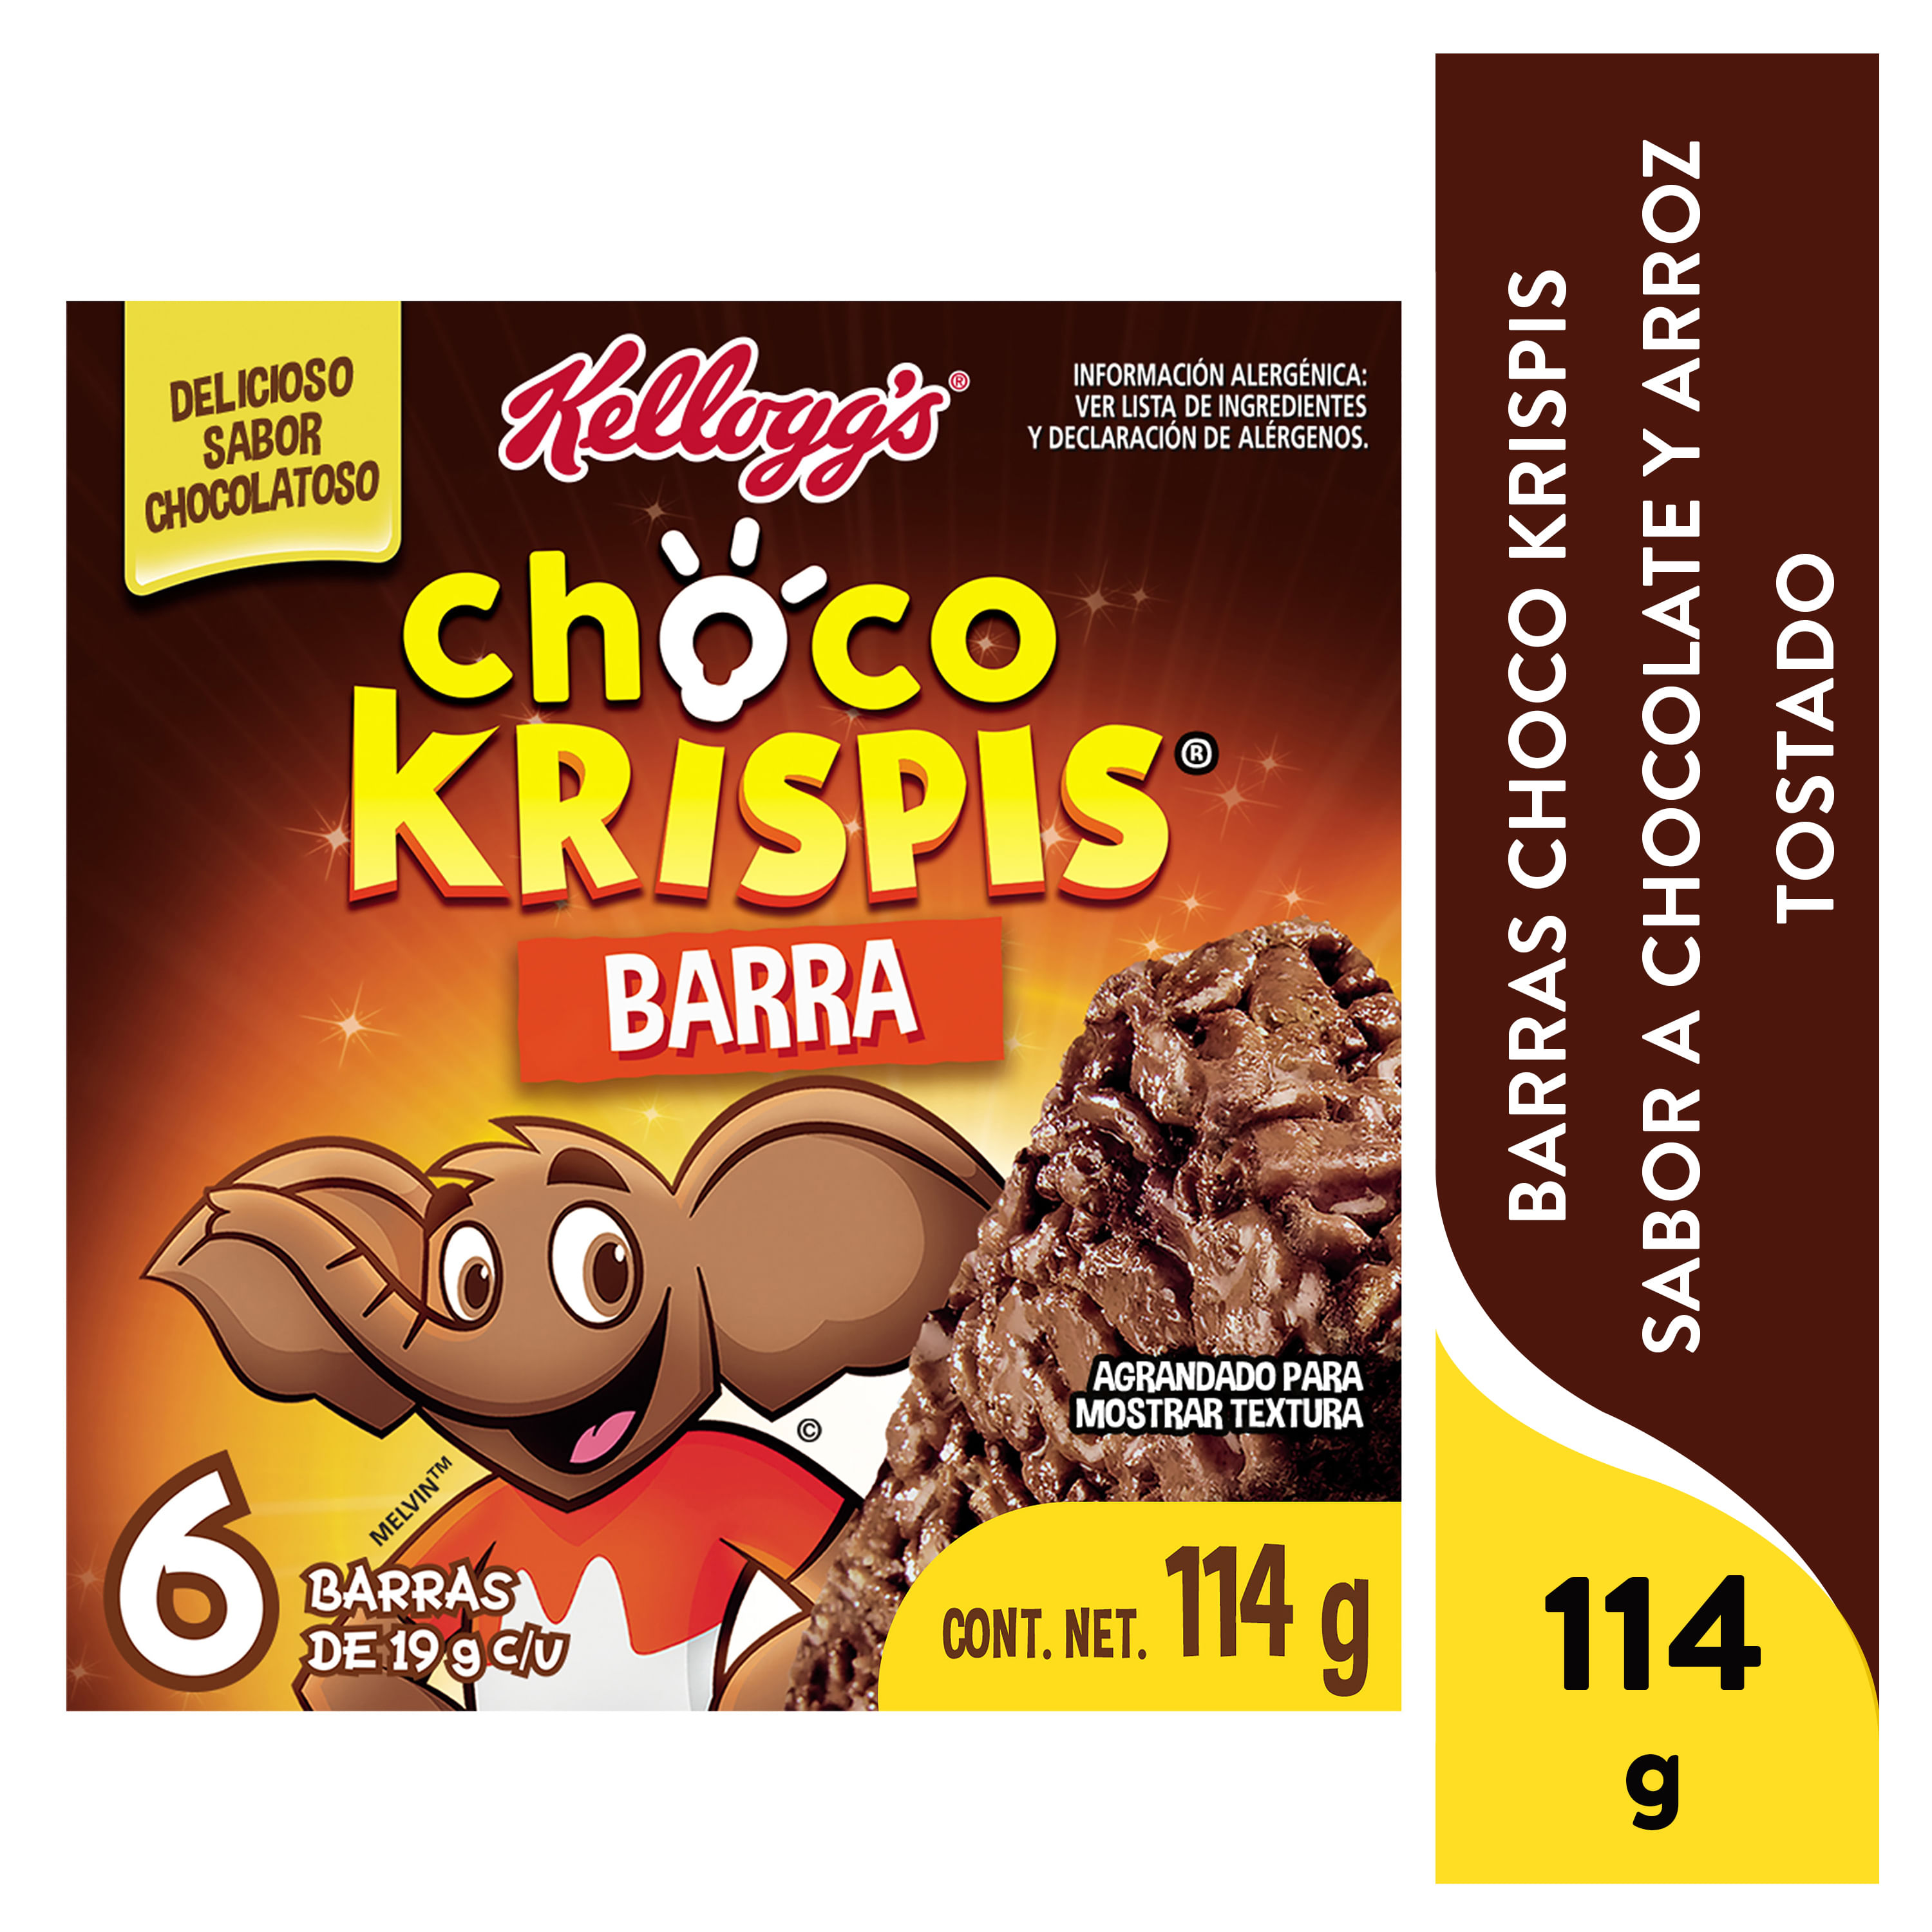 6-Pack-Barras-Kellogg-s-Choco-Krispis-Sabor-a-Chocolate-Barra-de-Arroz-Tostado-con-Sabor-a-Chocolate-1-Caja-de-114grr-1-34542